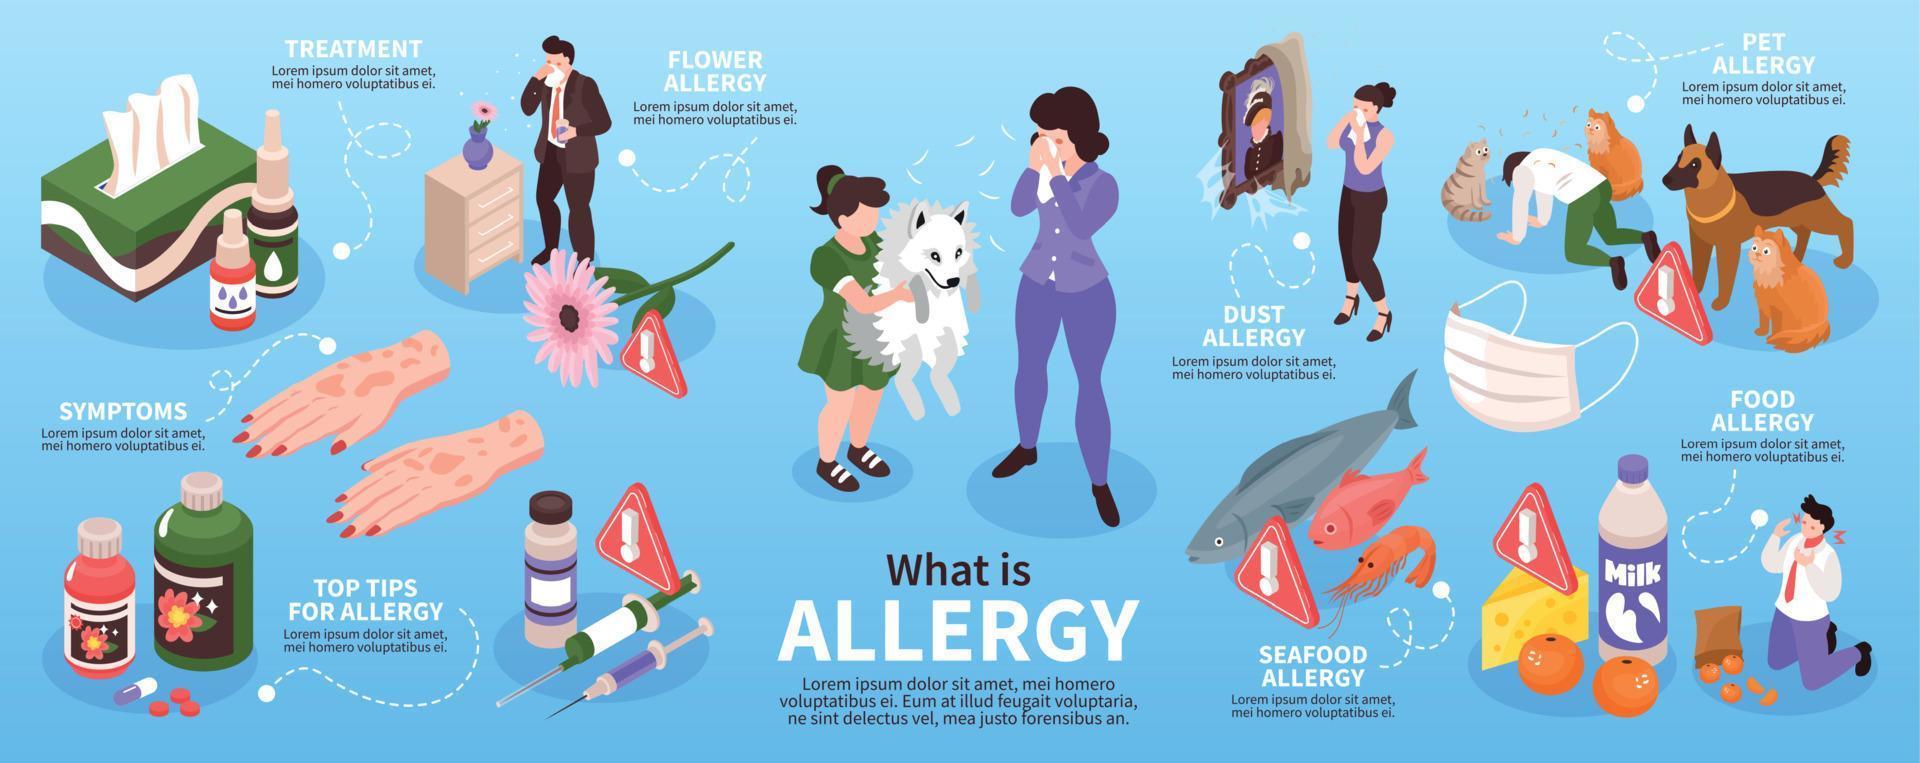 ¿Qué es la infografía de alergia? vector